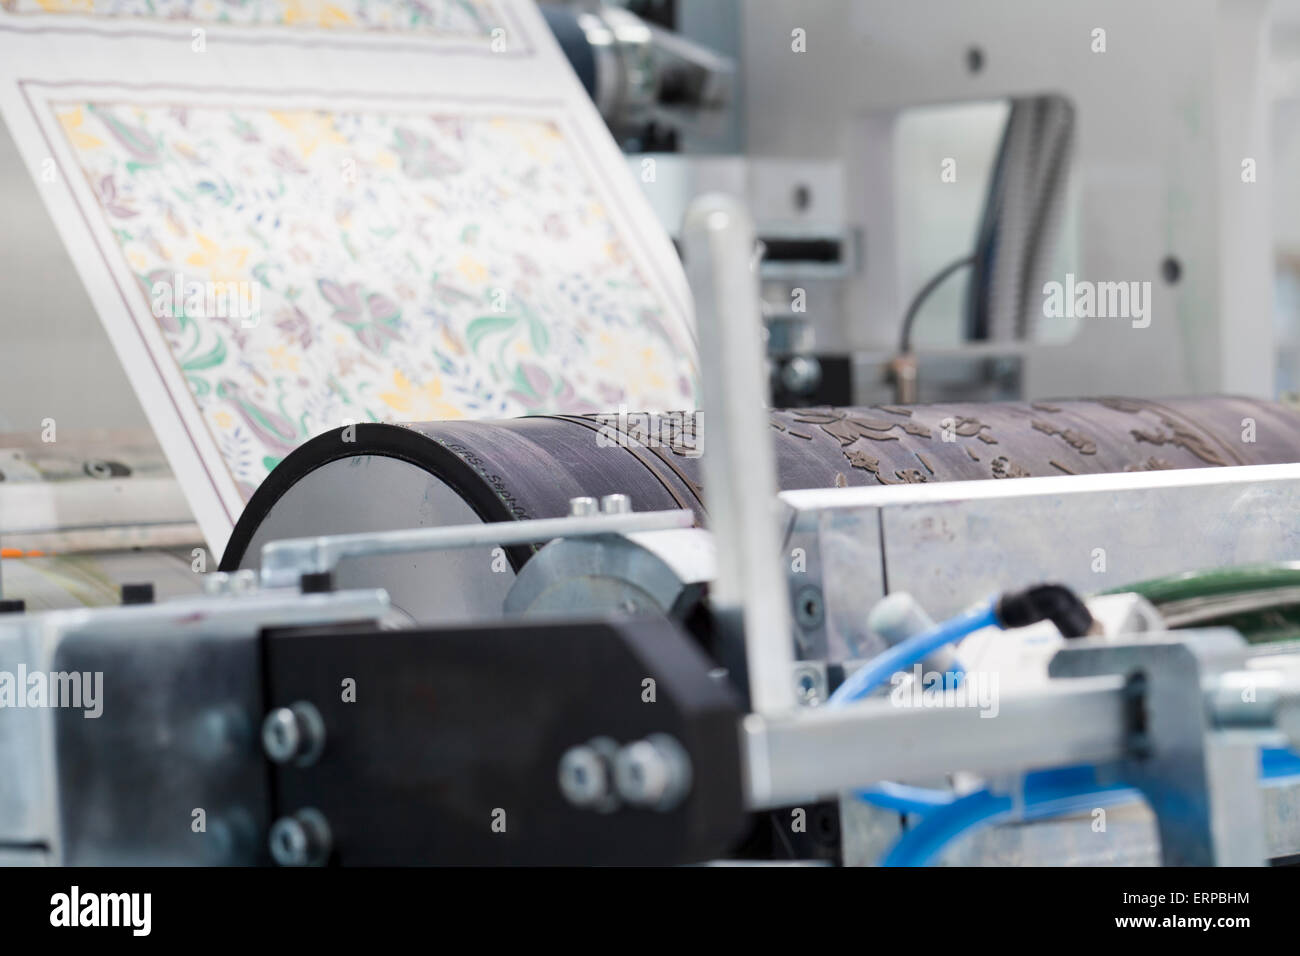 Detalle de la máquina de impresión en rollo Foto de stock